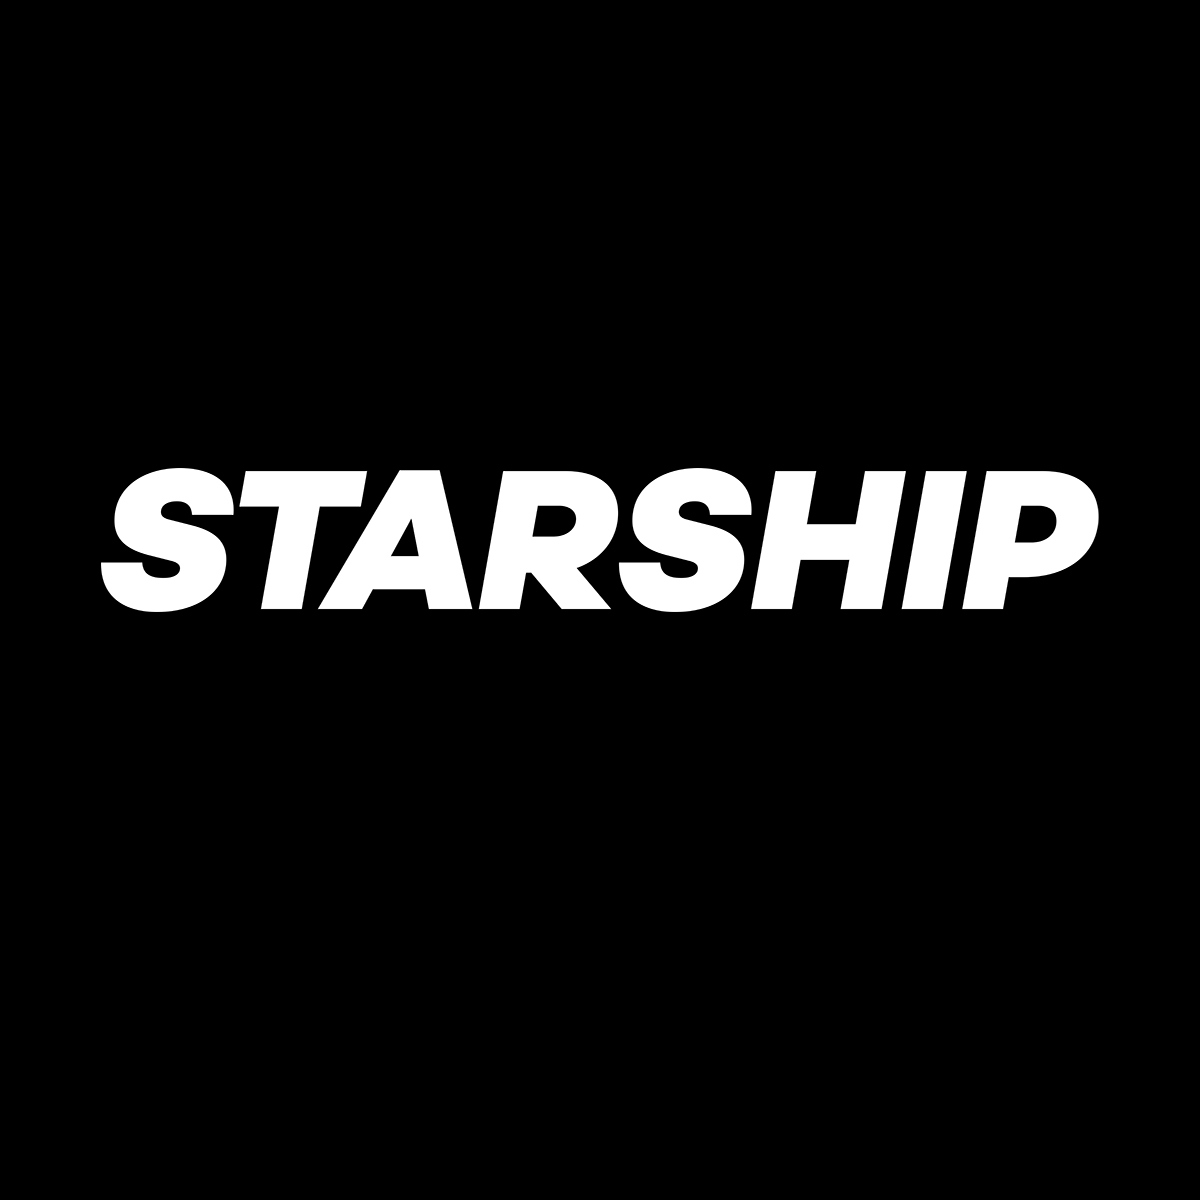 www.starship.xyz